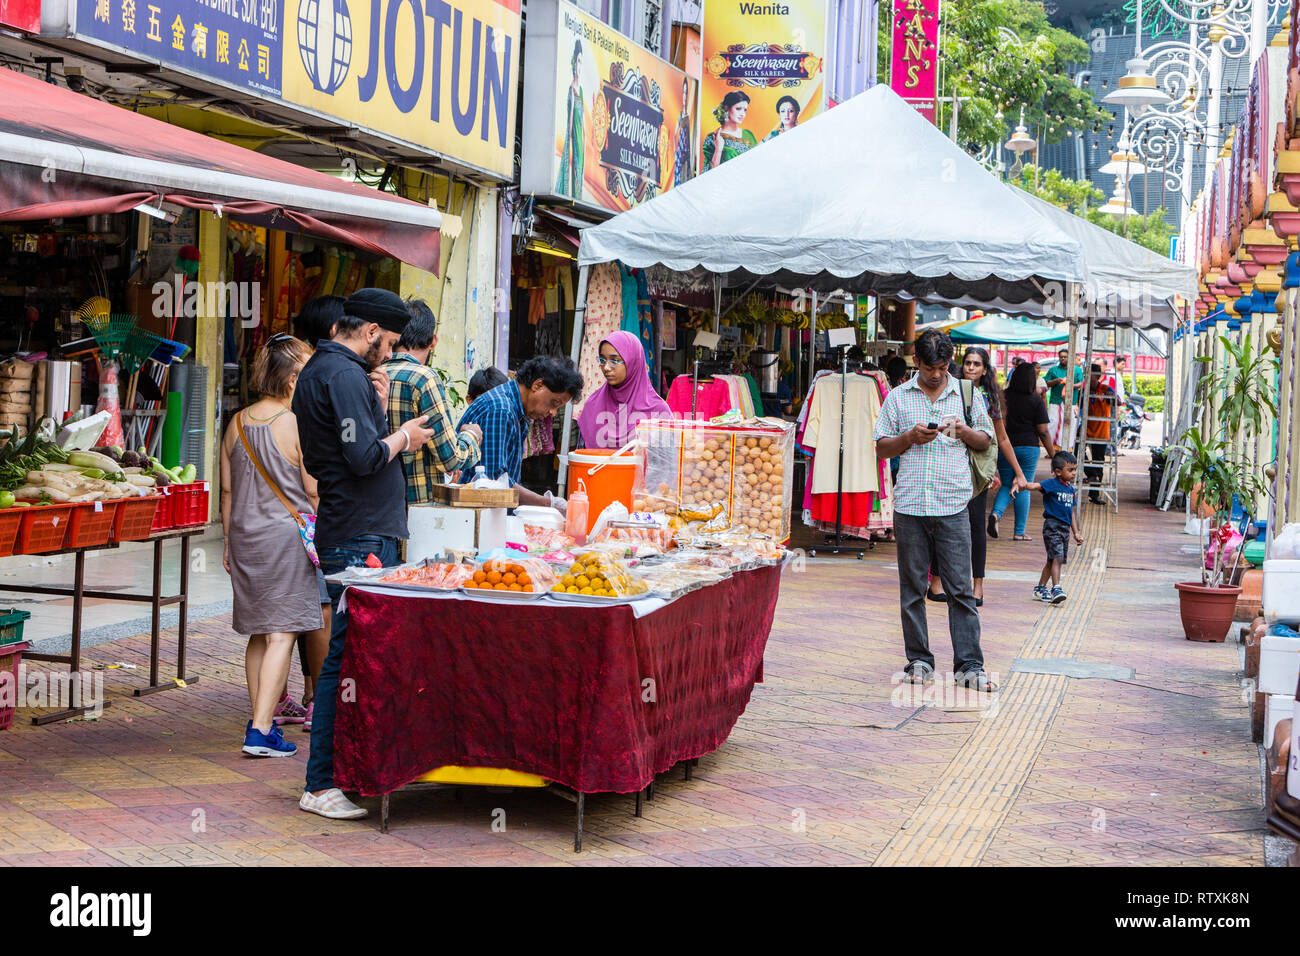 Sidewalk Vendors along Jalan Tun Sambanthan, Little India, Brickfields, Kuala Lumpur, Malaysia. Stock Photo